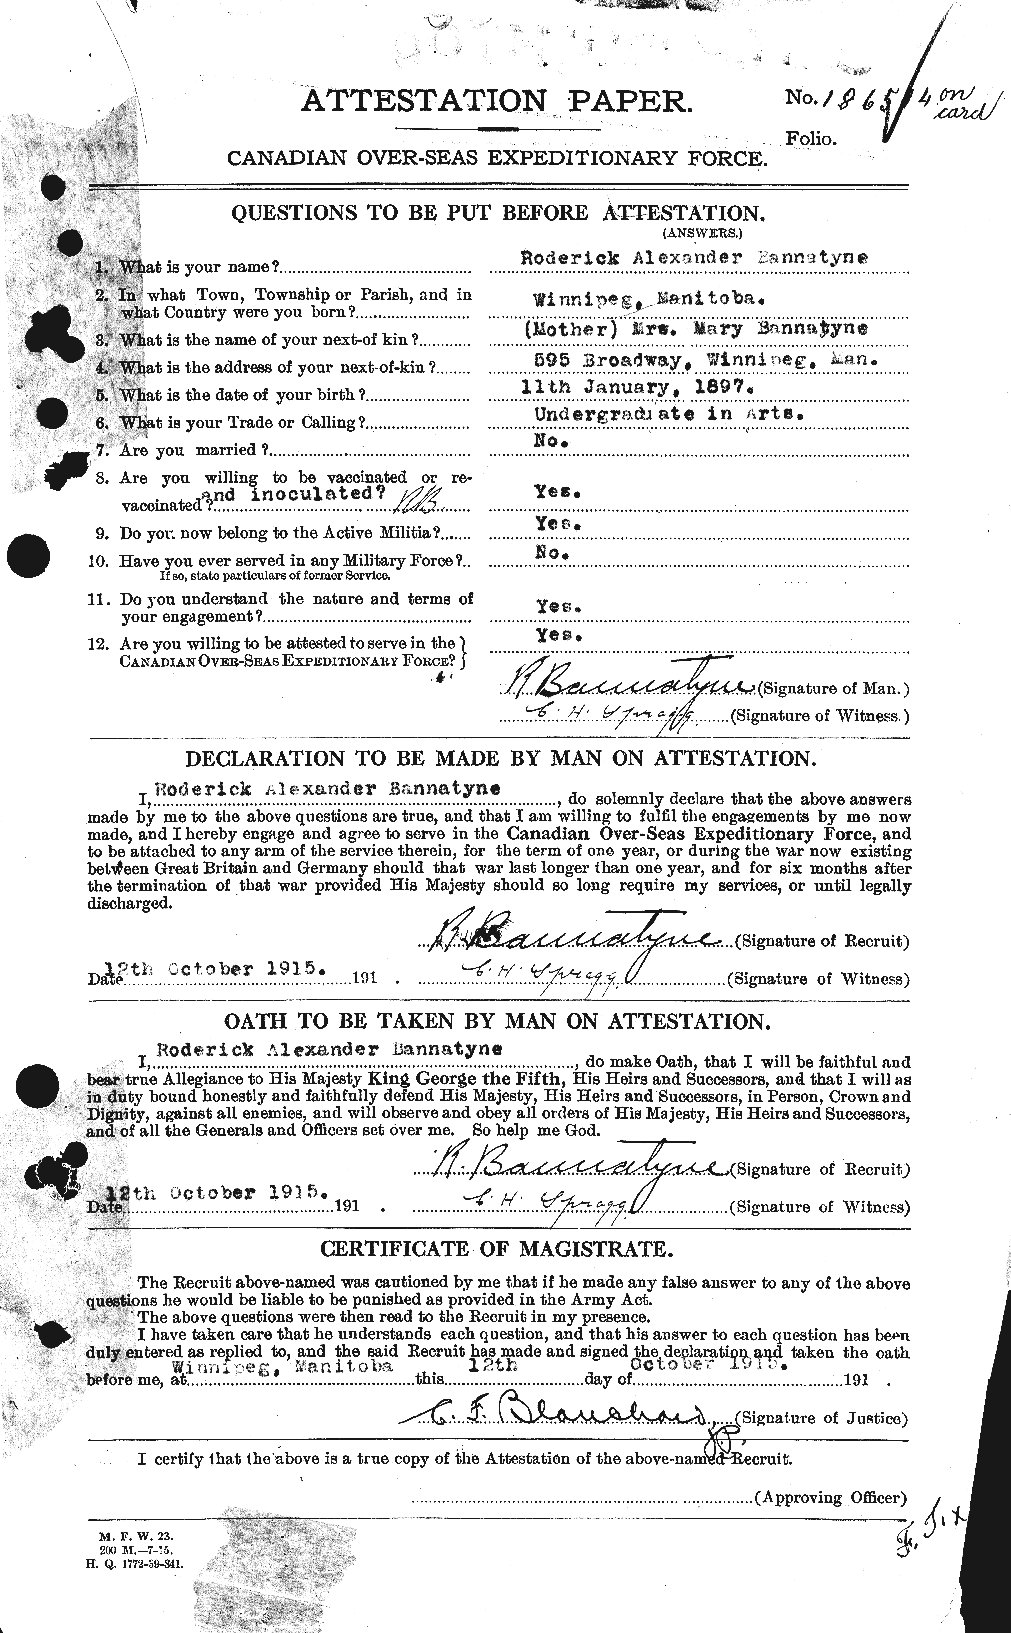 Dossiers du Personnel de la Première Guerre mondiale - CEC 224893a